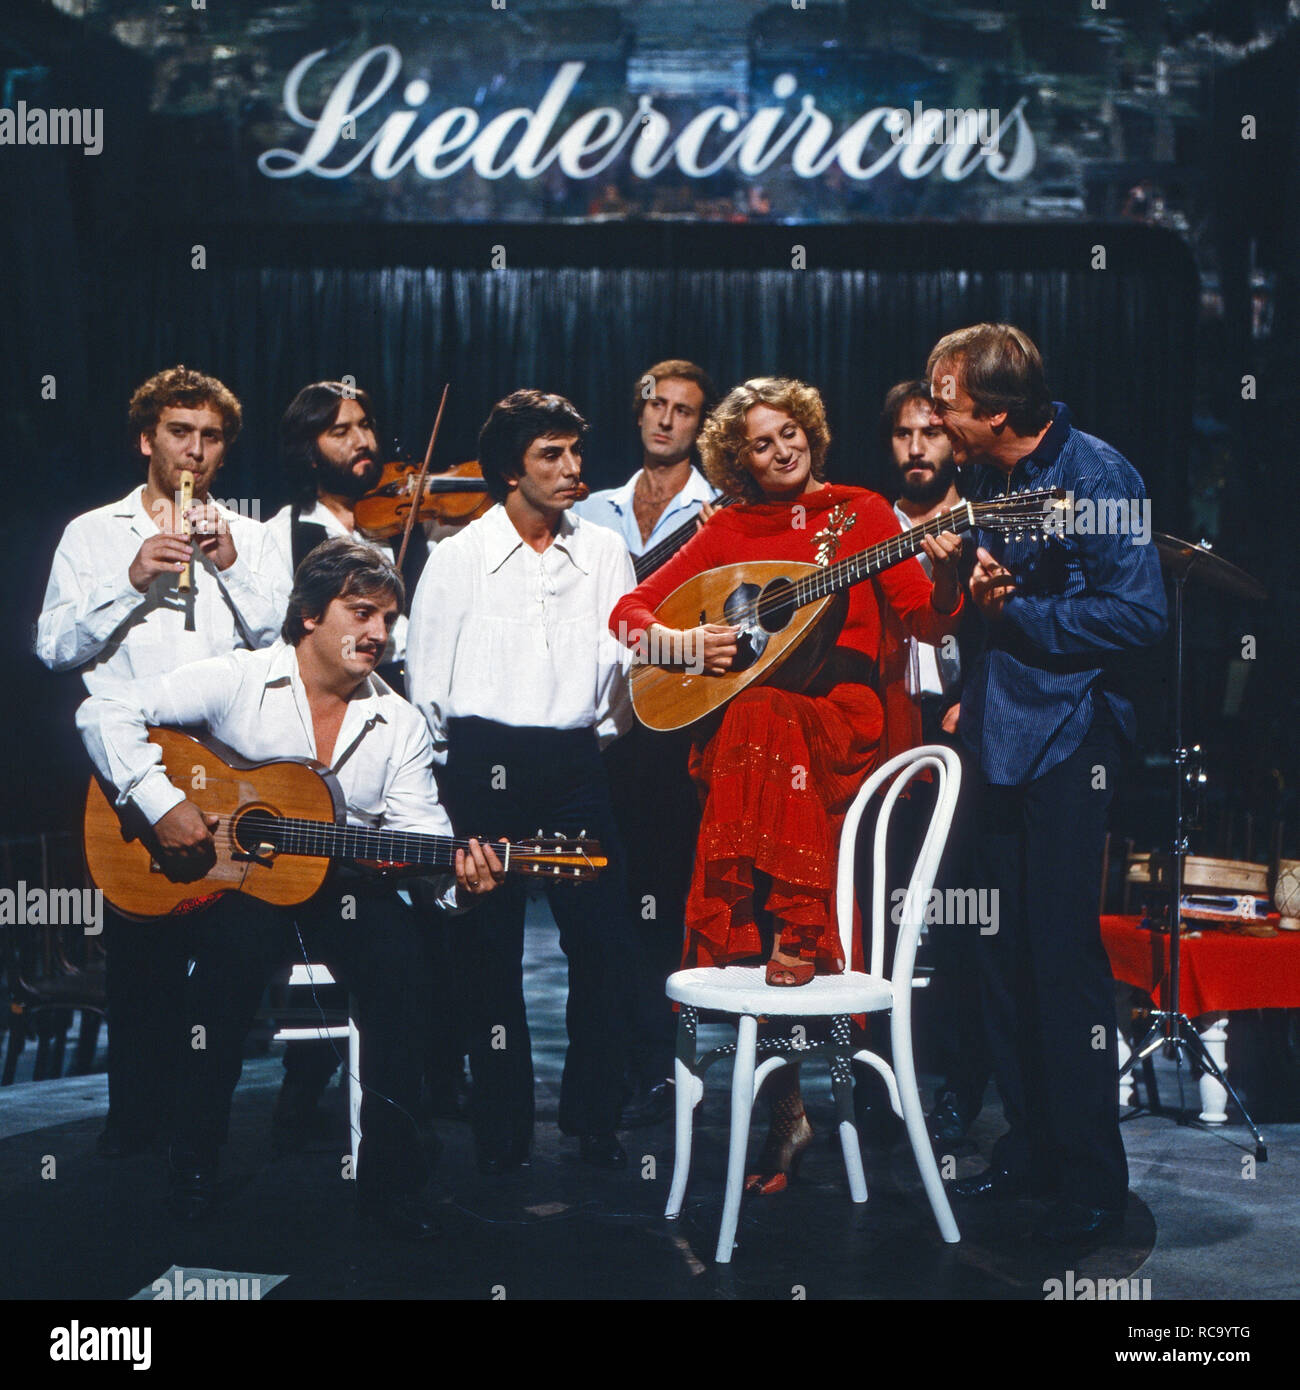 Neapolitanische Gruppe N.C.C.P. zu Gast im 'Liedercircus', Deutschland 1981. Neapolitan band N.C.C.P. performing at the show 'Liedercircus', Germany 1981. Stock Photo